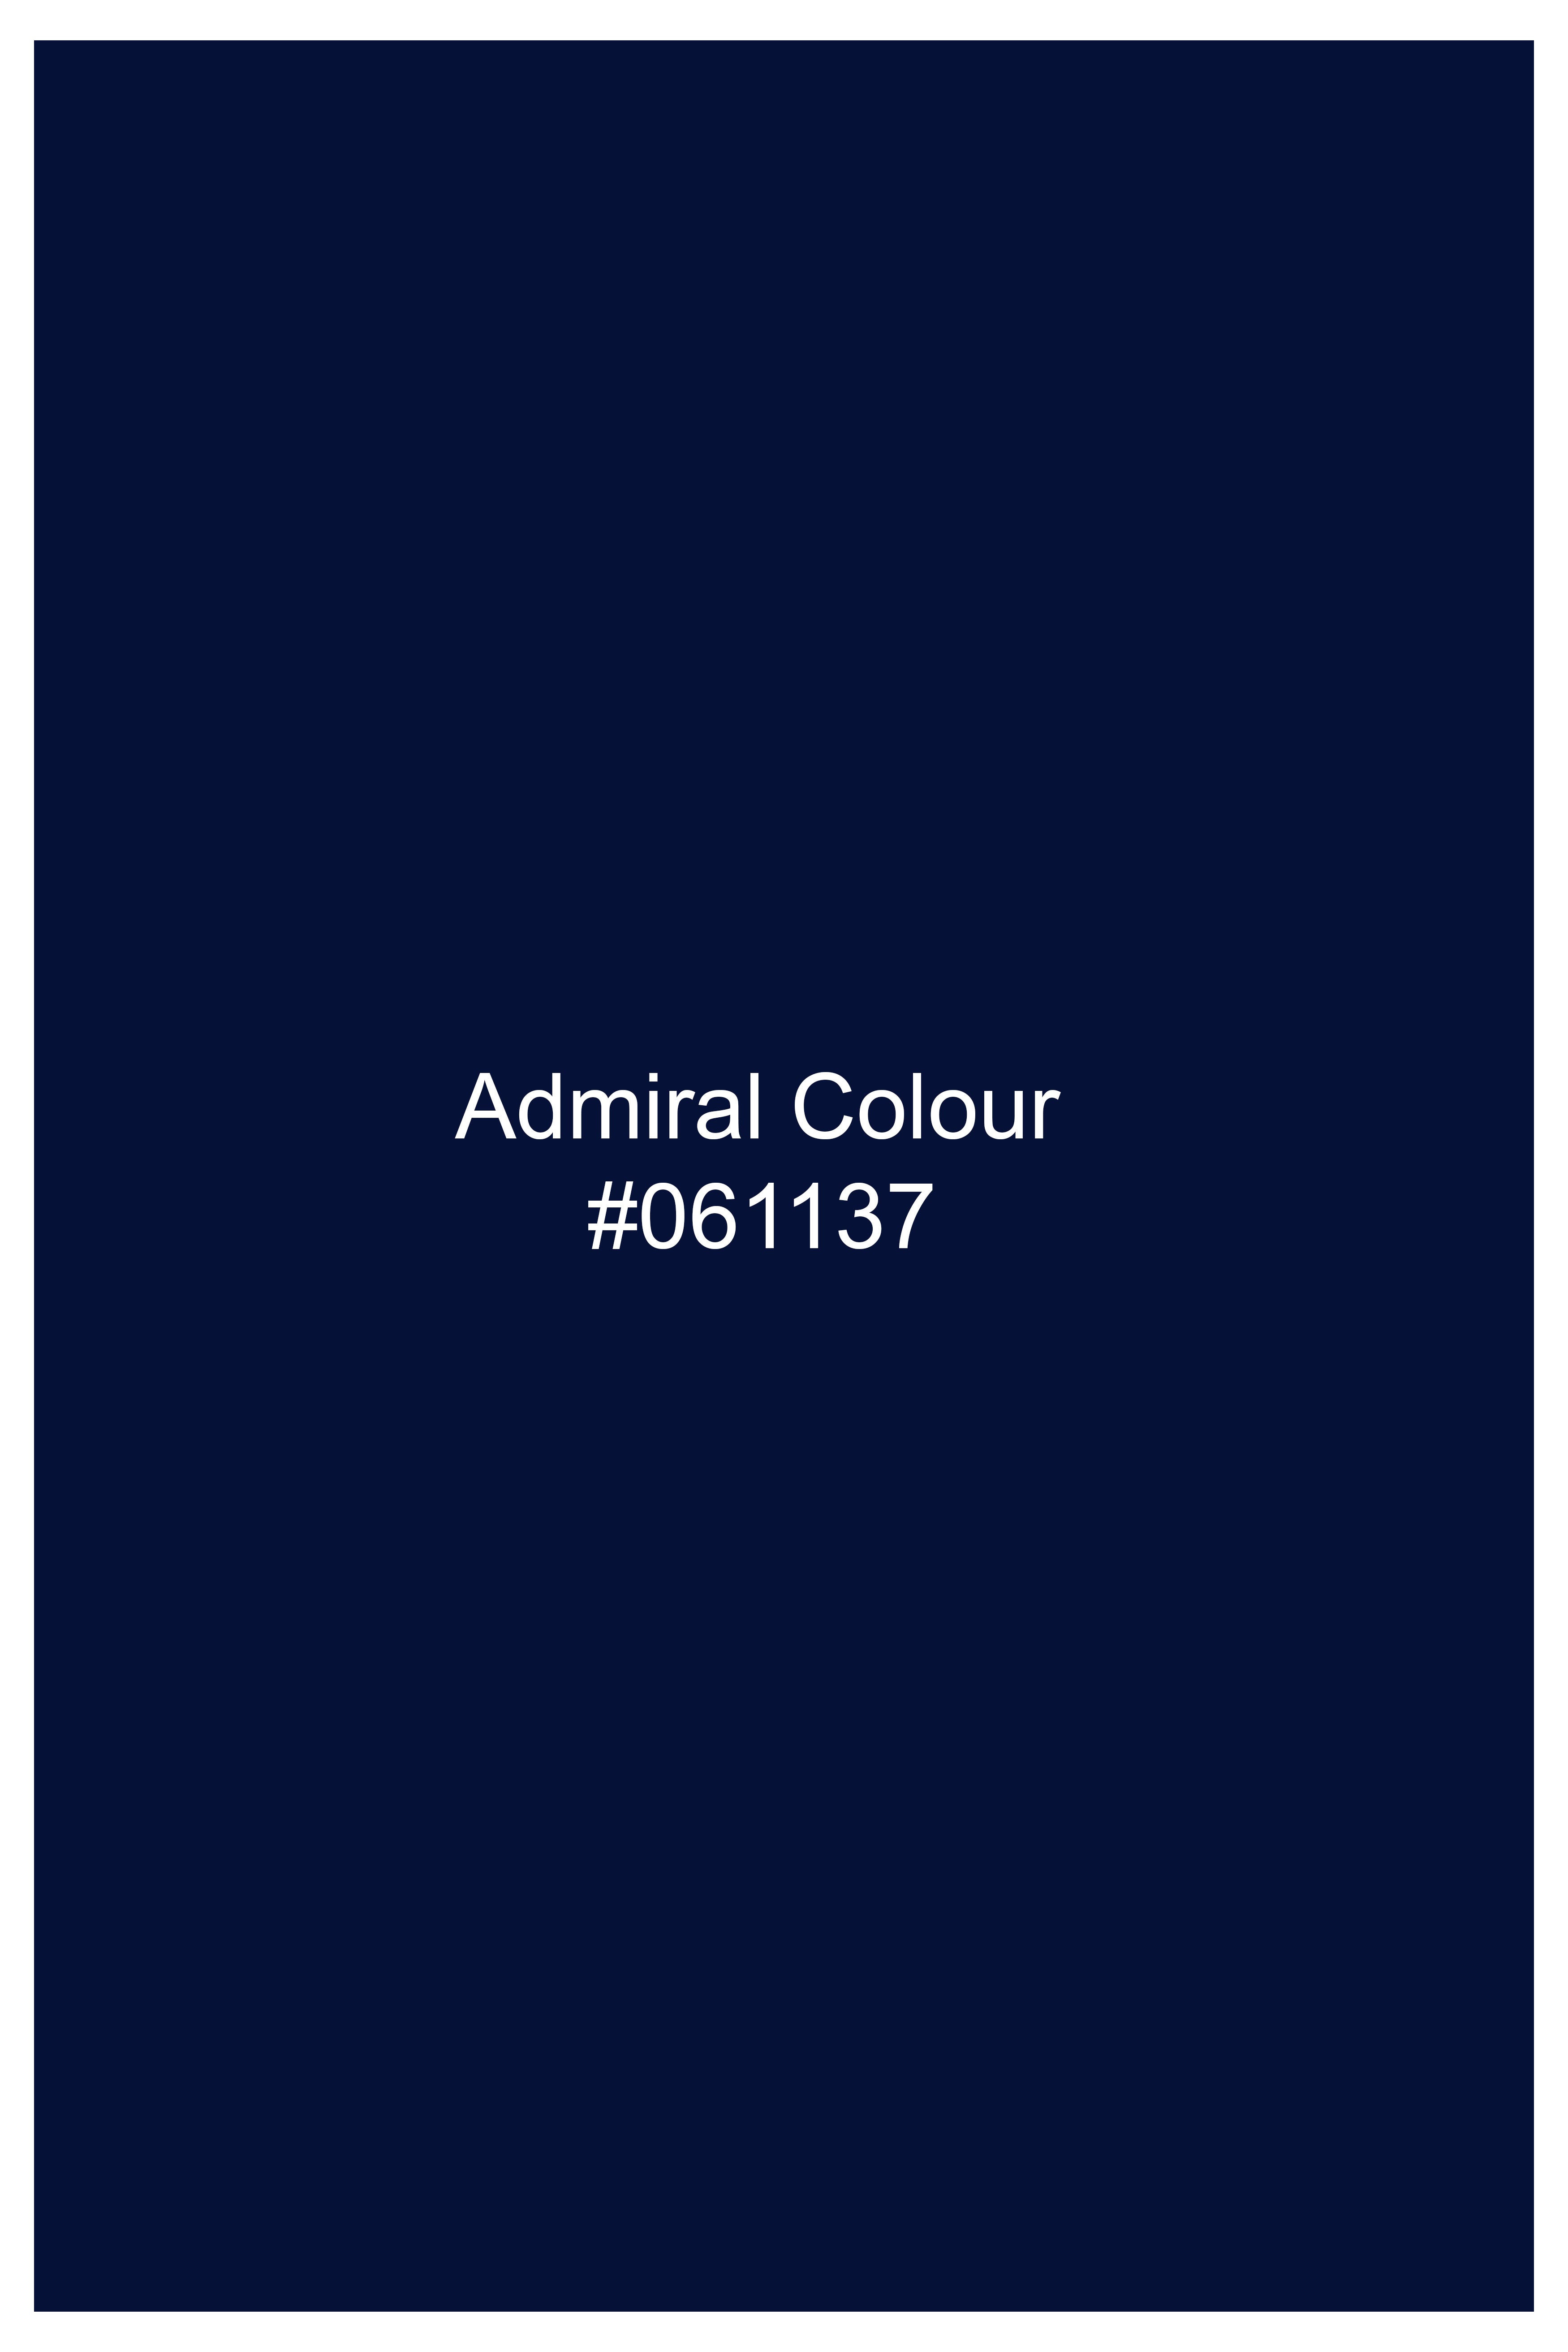 Admiral Blue Wool Rich Hand Painted Tuxedo Designer Suit ST1446-BKL-ART-36,ST1446-BKL-ART-38,ST1446-BKL-ART-40,ST1446-BKL-ART-42,ST1446-BKL-ART-44,ST1446-BKL-ART-46,ST1446-BKL-ART-48,ST1446-BKL-ART-50,ST1446-BKL-ART-52,ST1446-BKL-ART-54,ST1446-BKL-ART-56,ST1446-BKL-ART-58,ST1446-BKL-ART-60